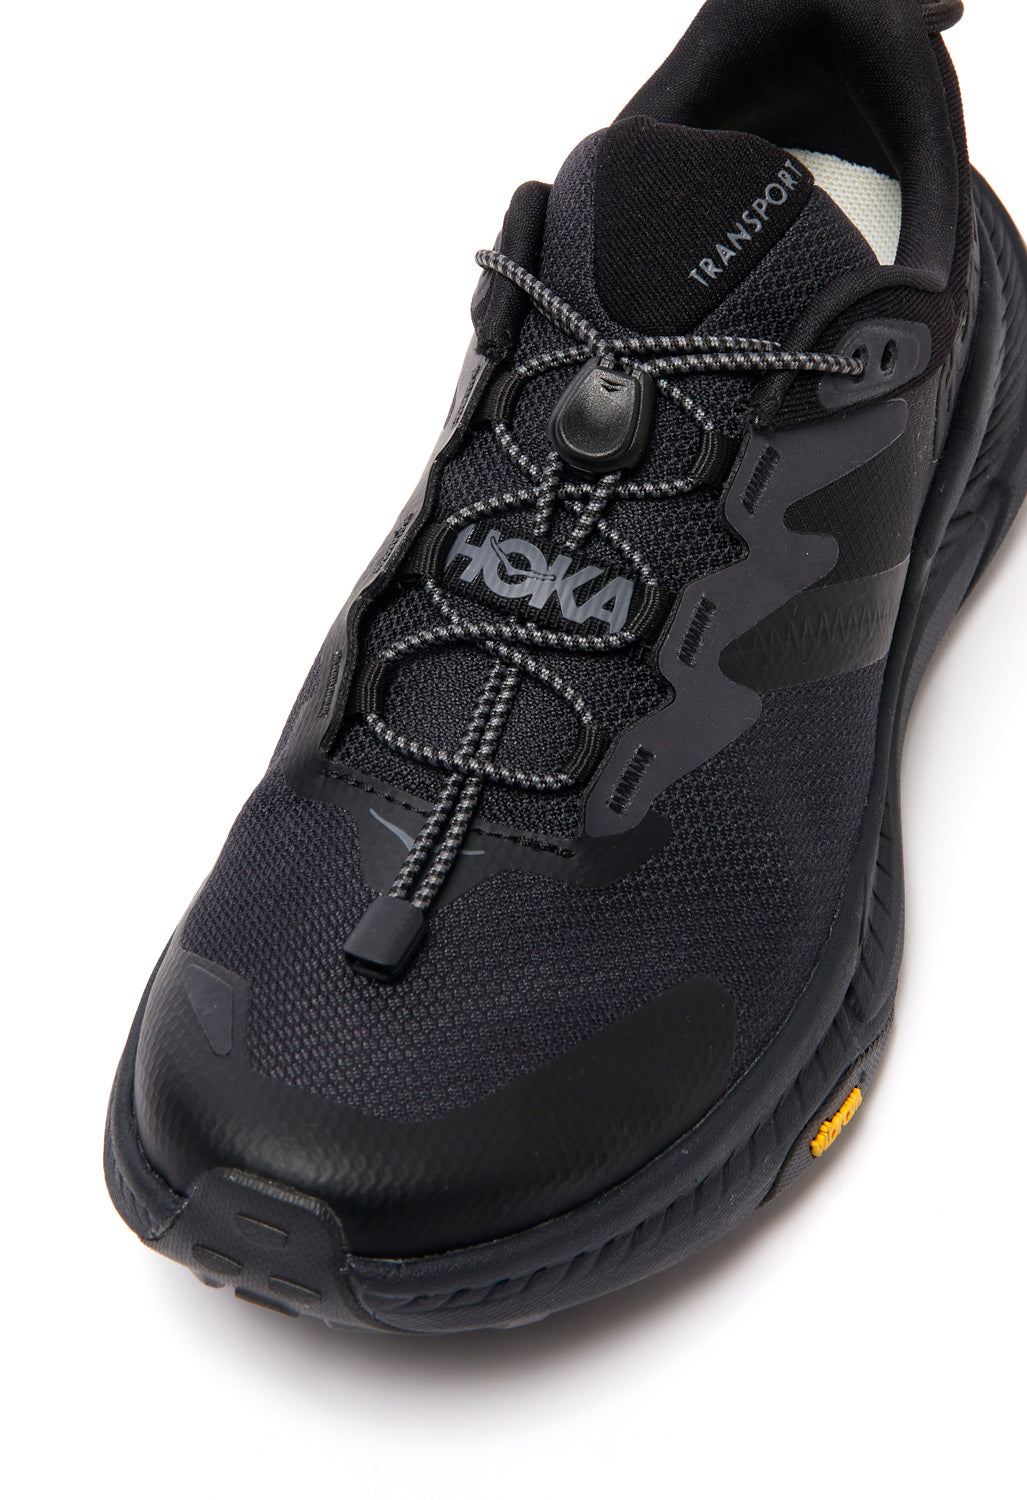 Hoka Transport Women's Shoes - Black / Black